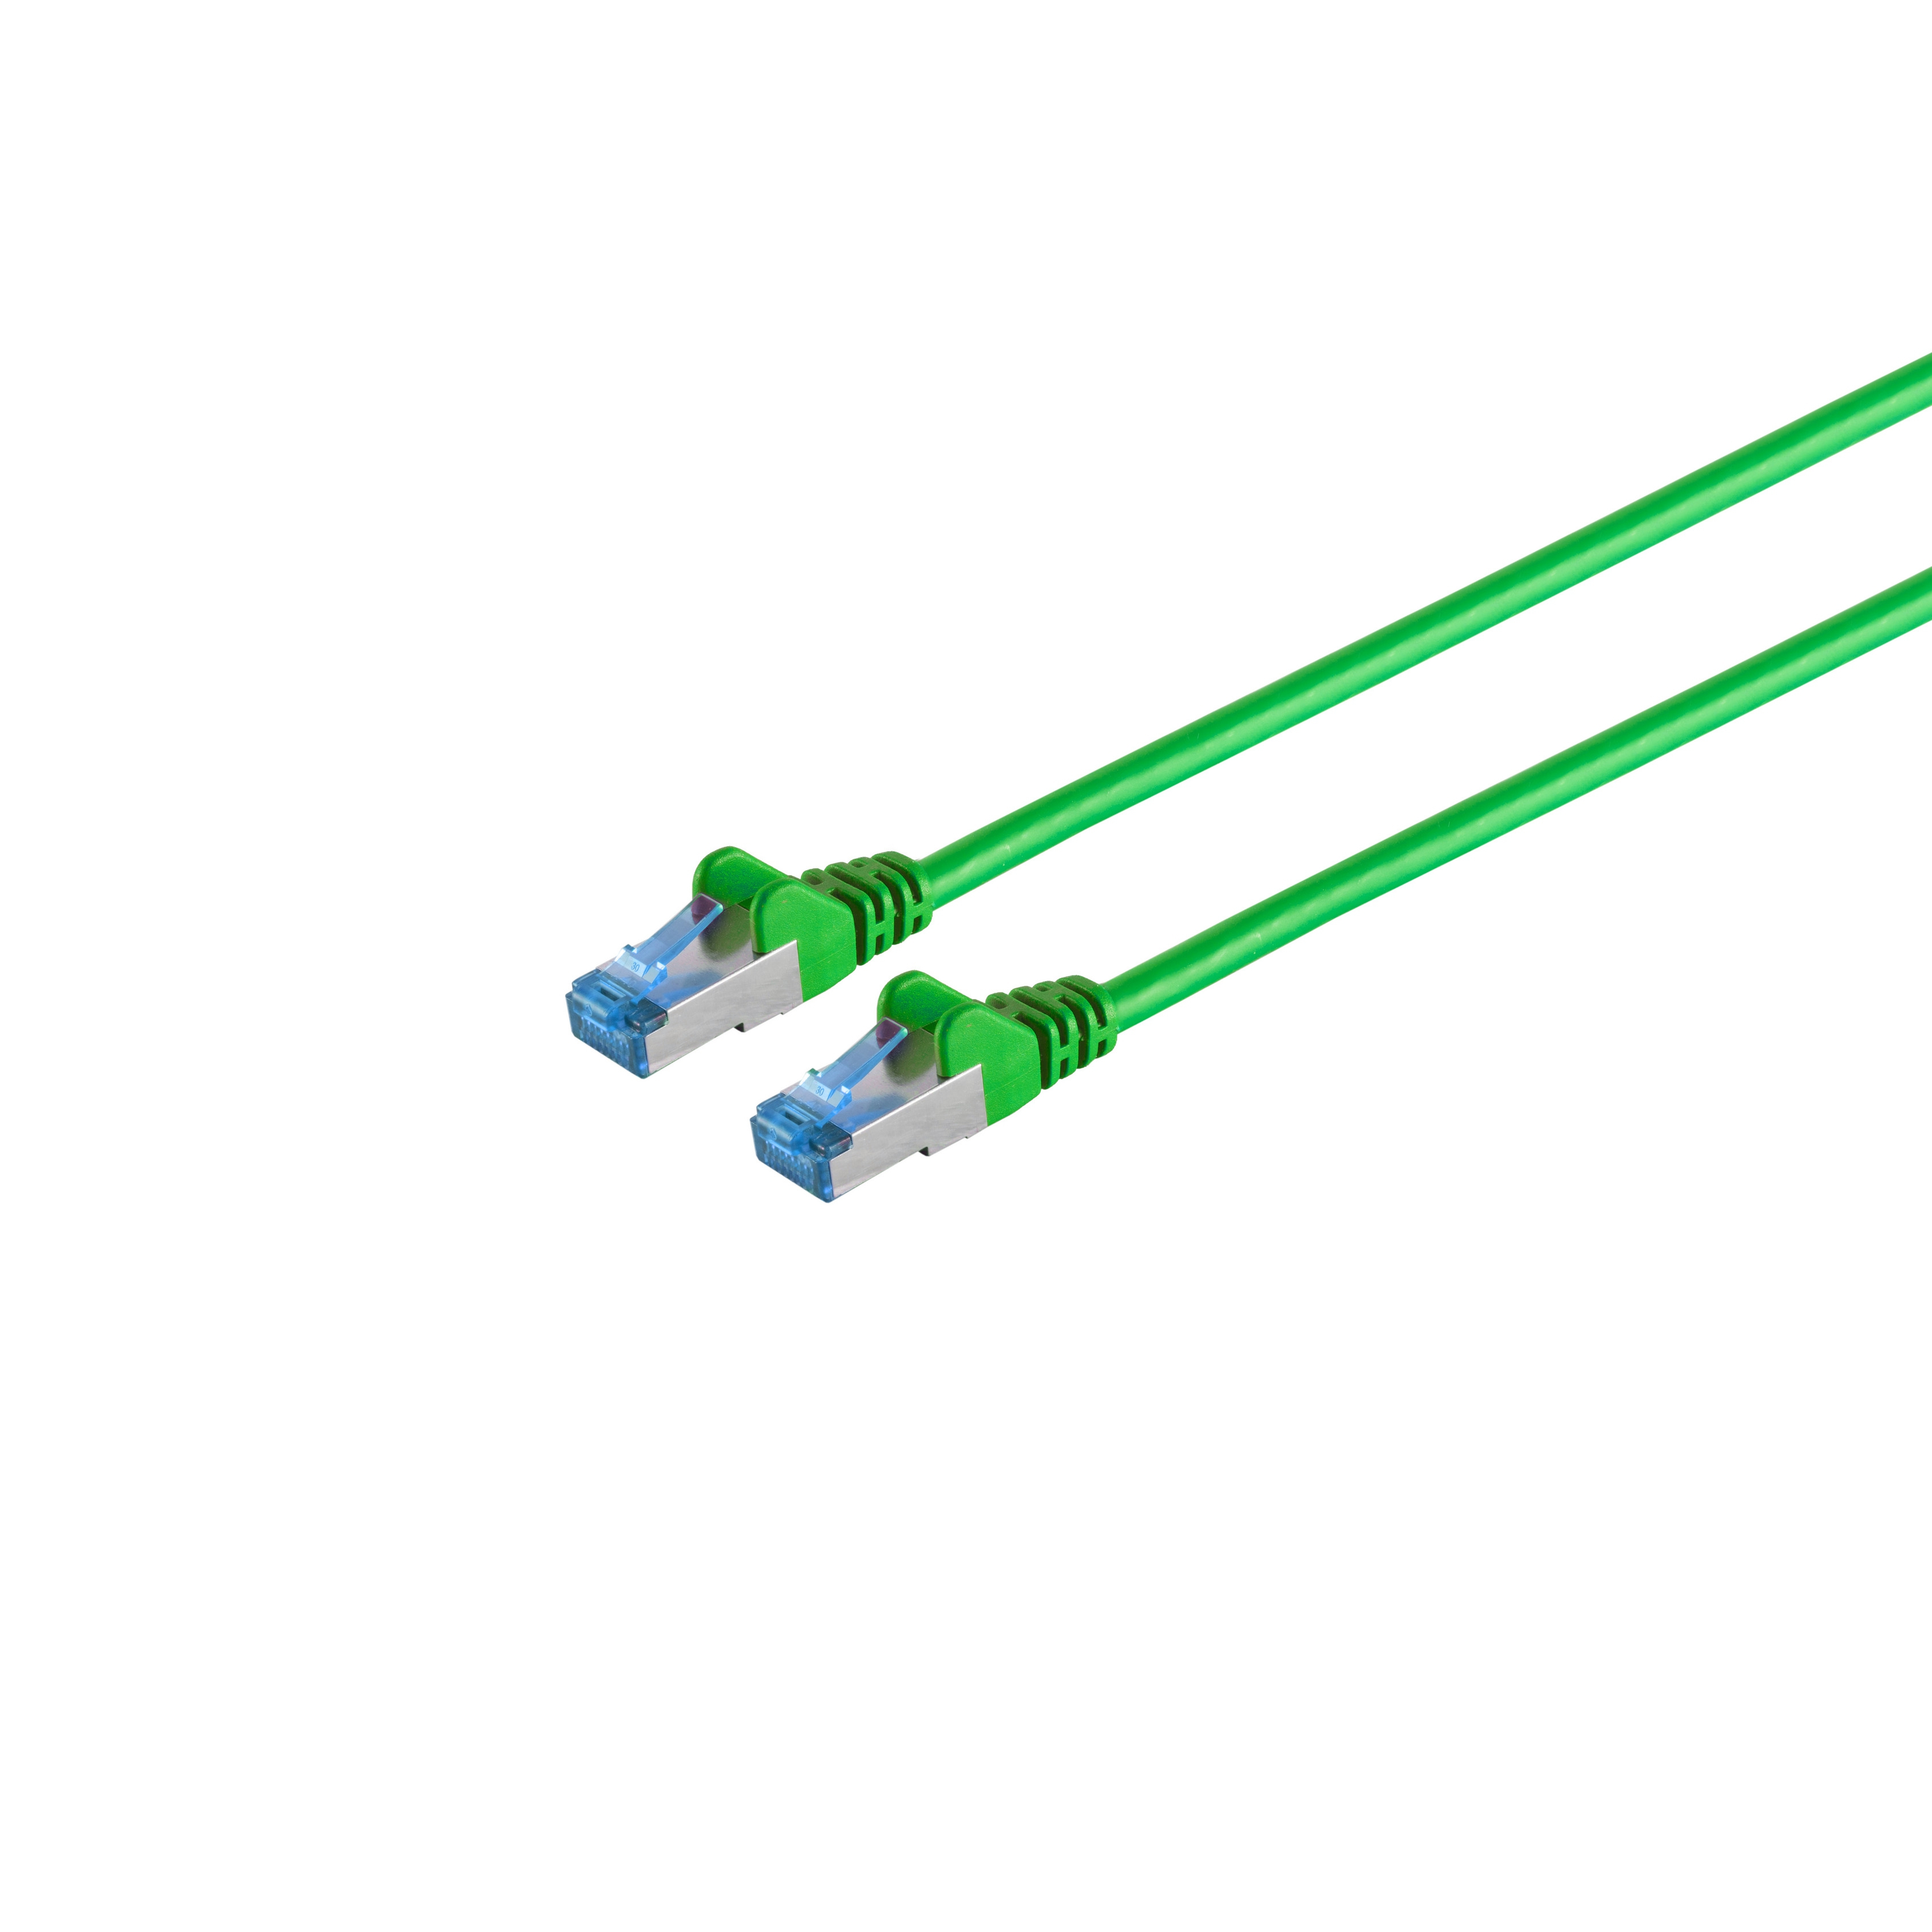 Patchkabel m S/CONN grün 1,5m, 1,50 cat6A PIMF S/FTP Halogenfrei RJ45, MAXIMUM CONNECTIVITY Patchkabel